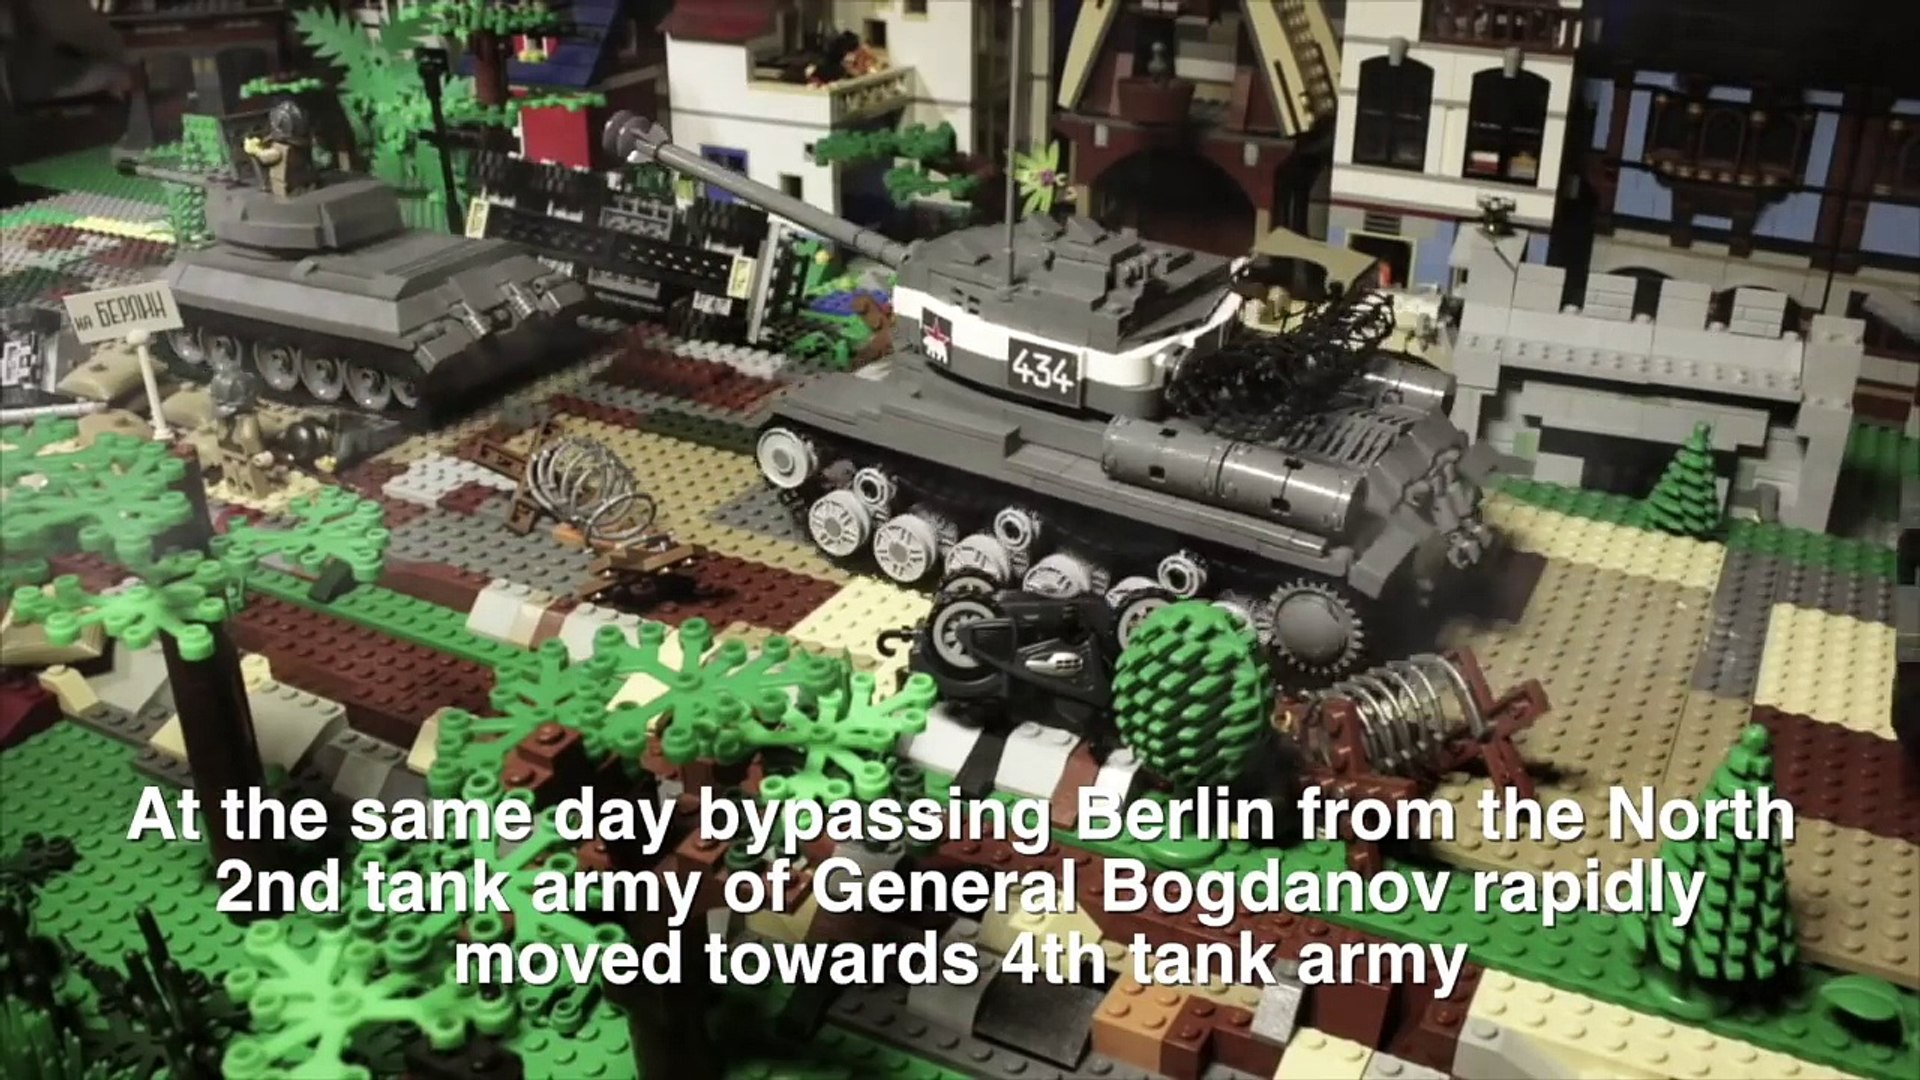 LEGO WW2 BATTLE FOR BERLIN 1945, last great battle of ww2 - video  Dailymotion